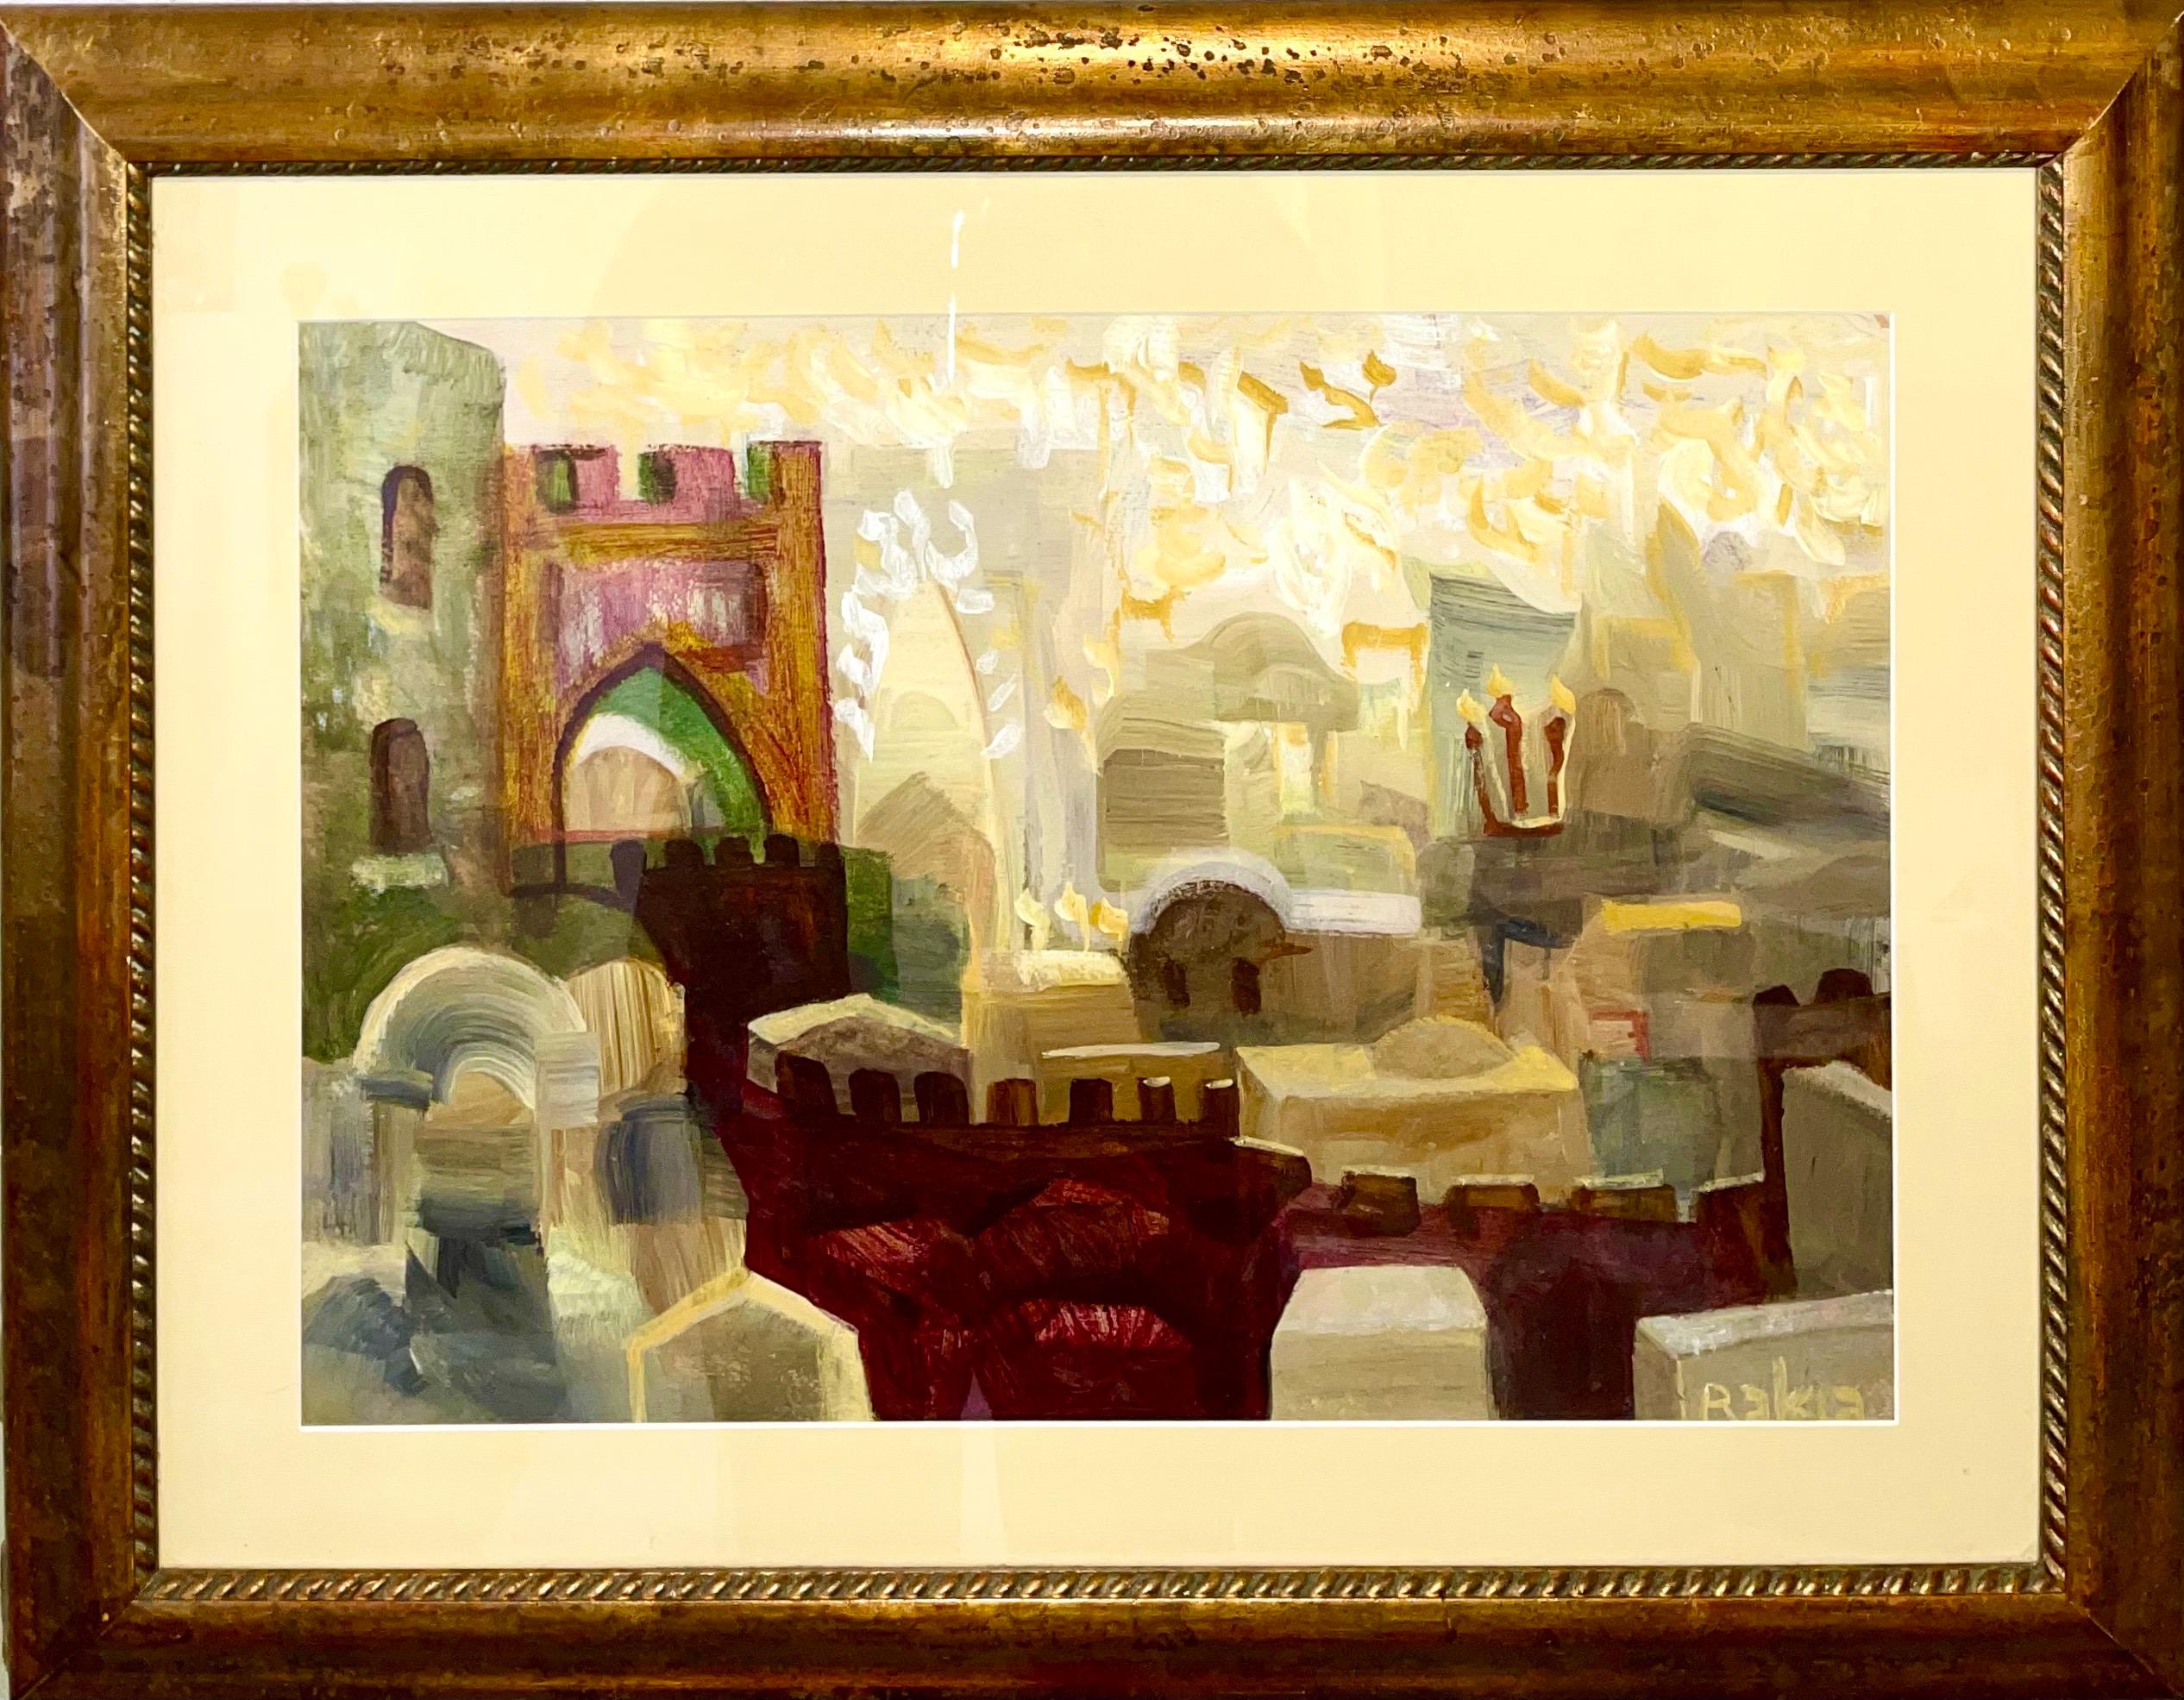 Abstract Painting David Rakia - Peinture à l'huile juive mystique Kabbalah de Jérusalem paysage urbain lettres hébraïques judaïques